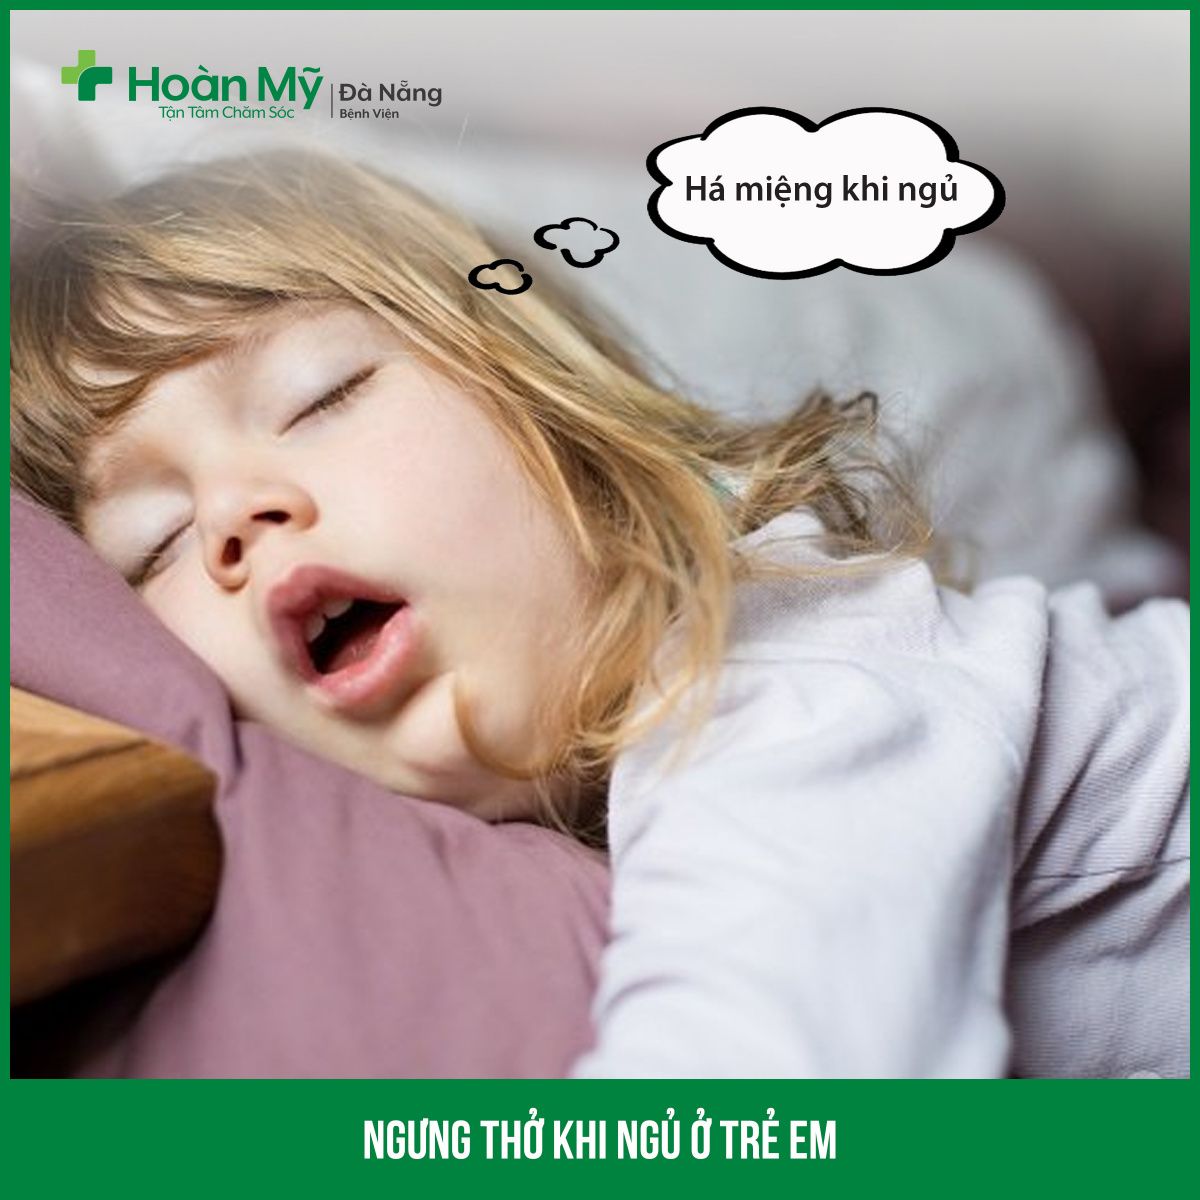 Ngưng thở khi ngủ ở trẻ em - Bệnh viện Hoàn Mỹ Sài Gòn